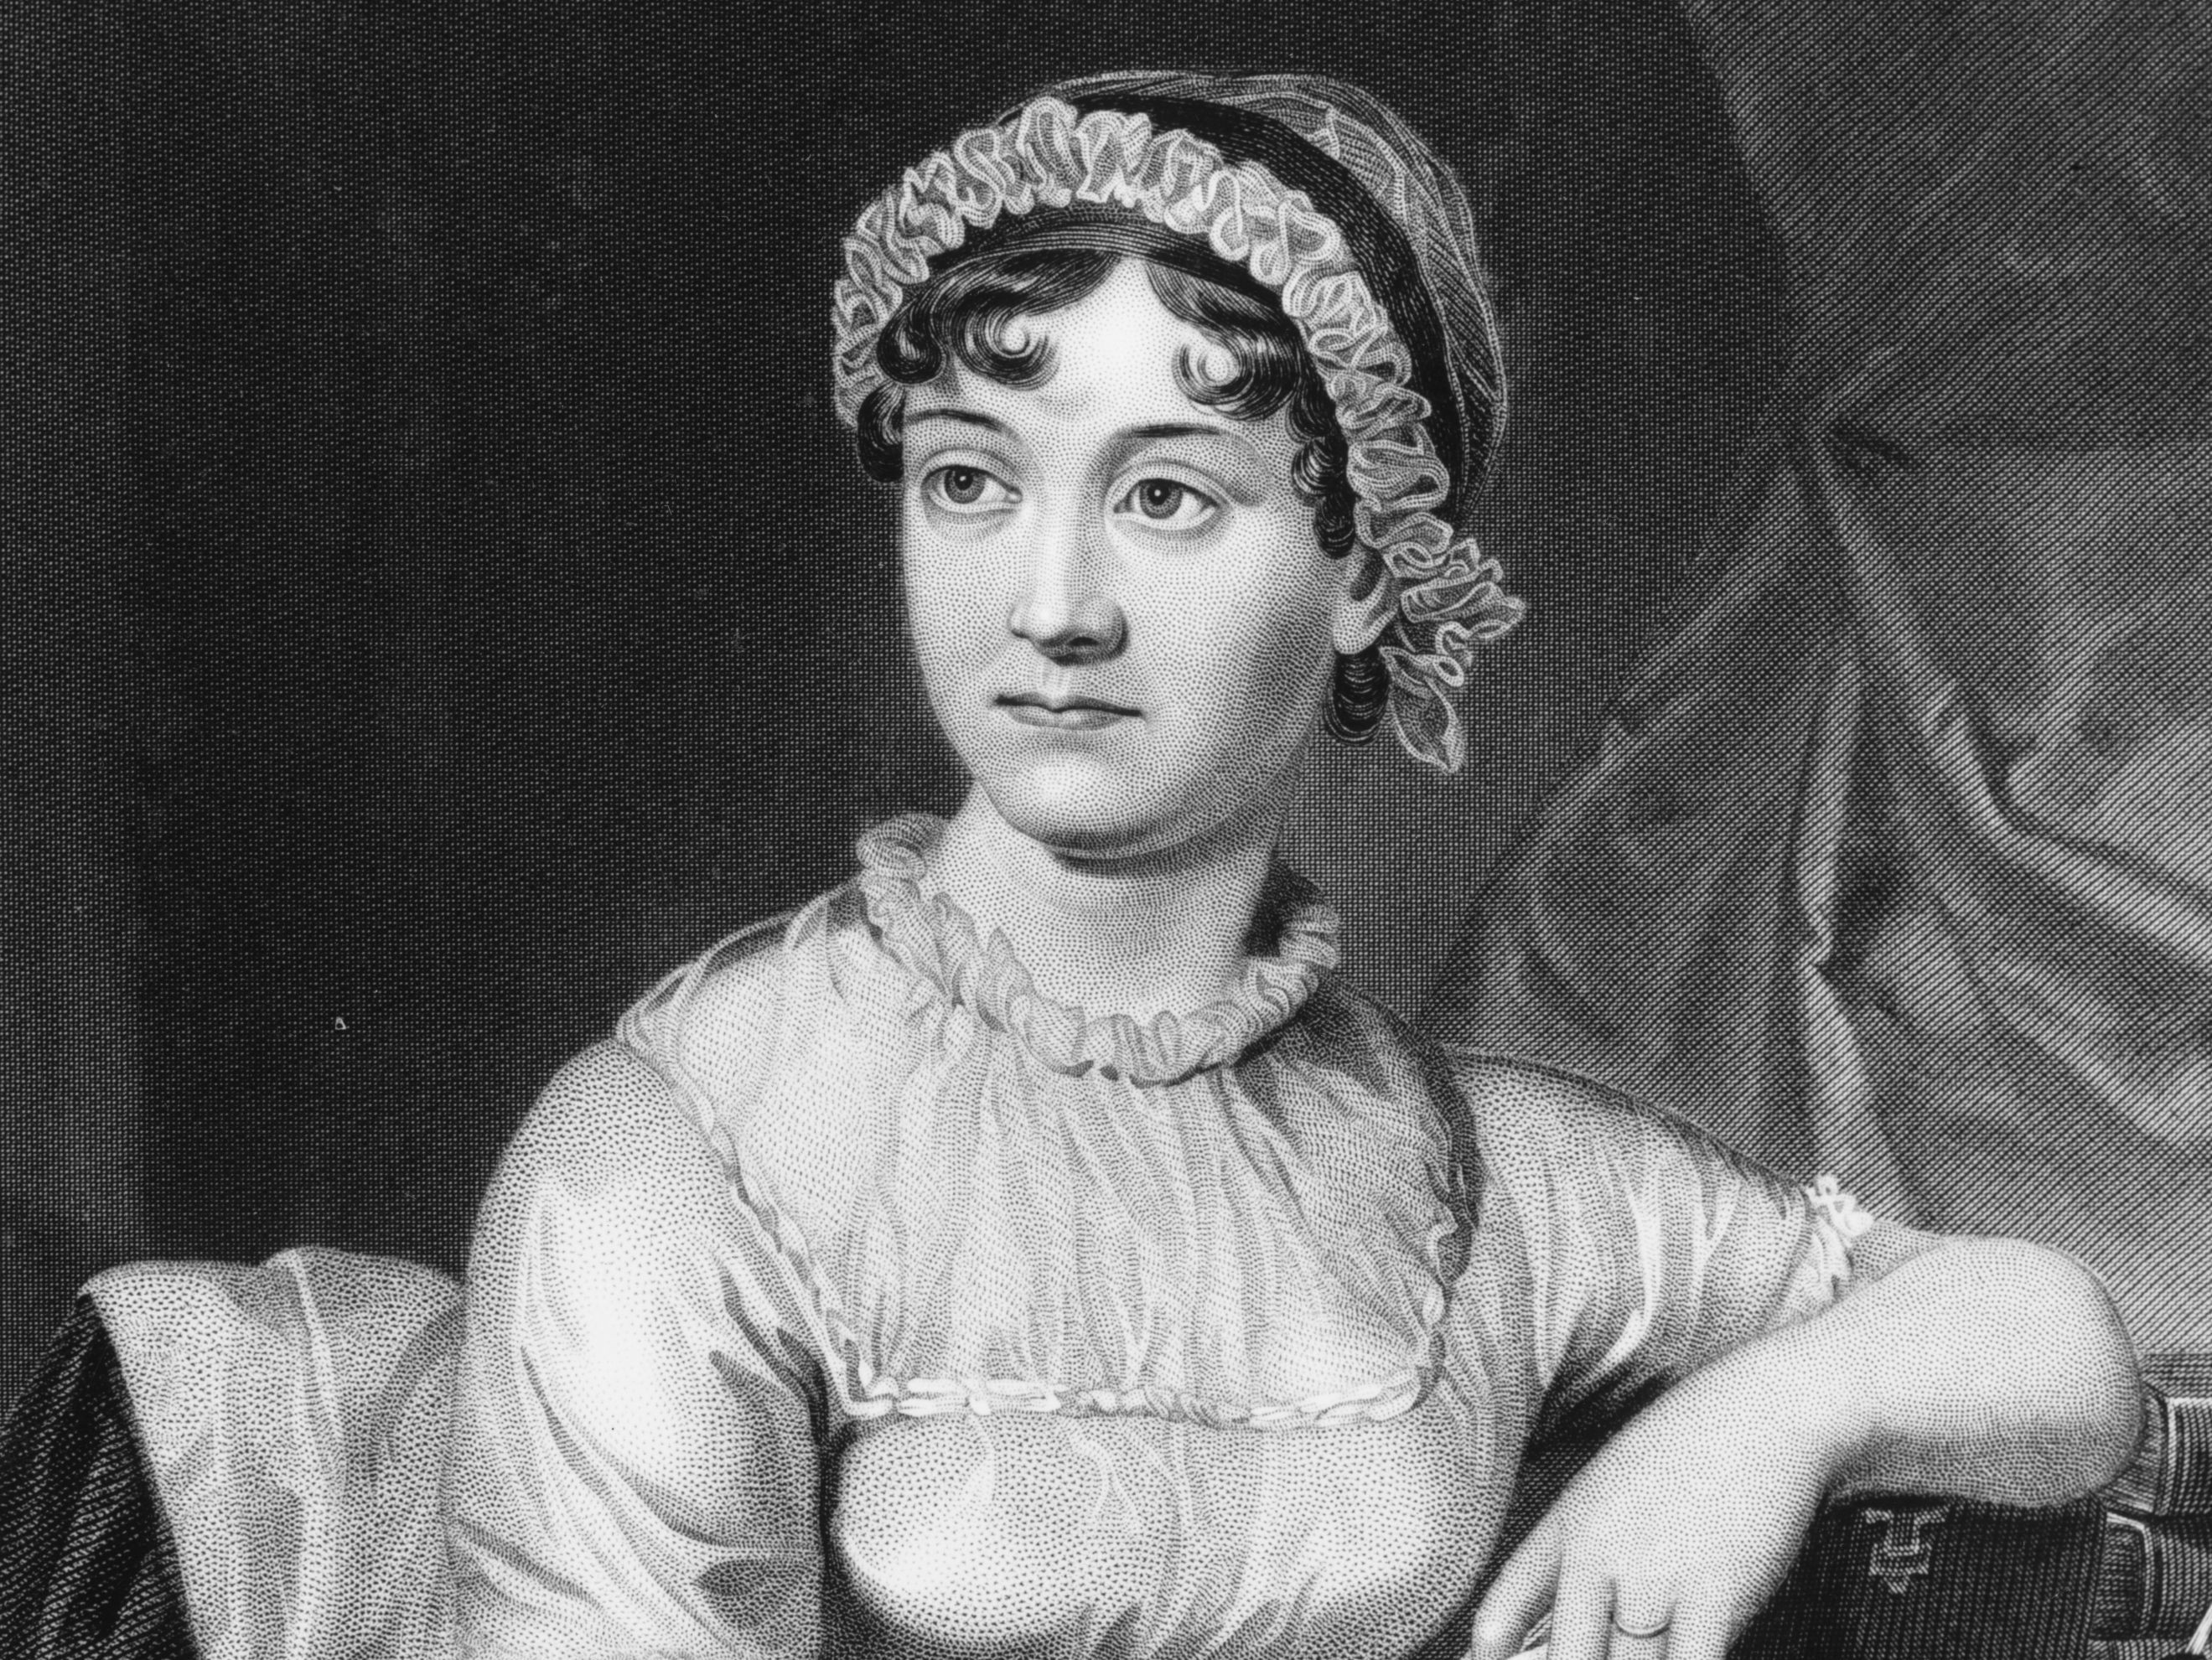 Segundo pesquisadores, Jane Austen teria morrido envenenada (Foto: Divulgação)